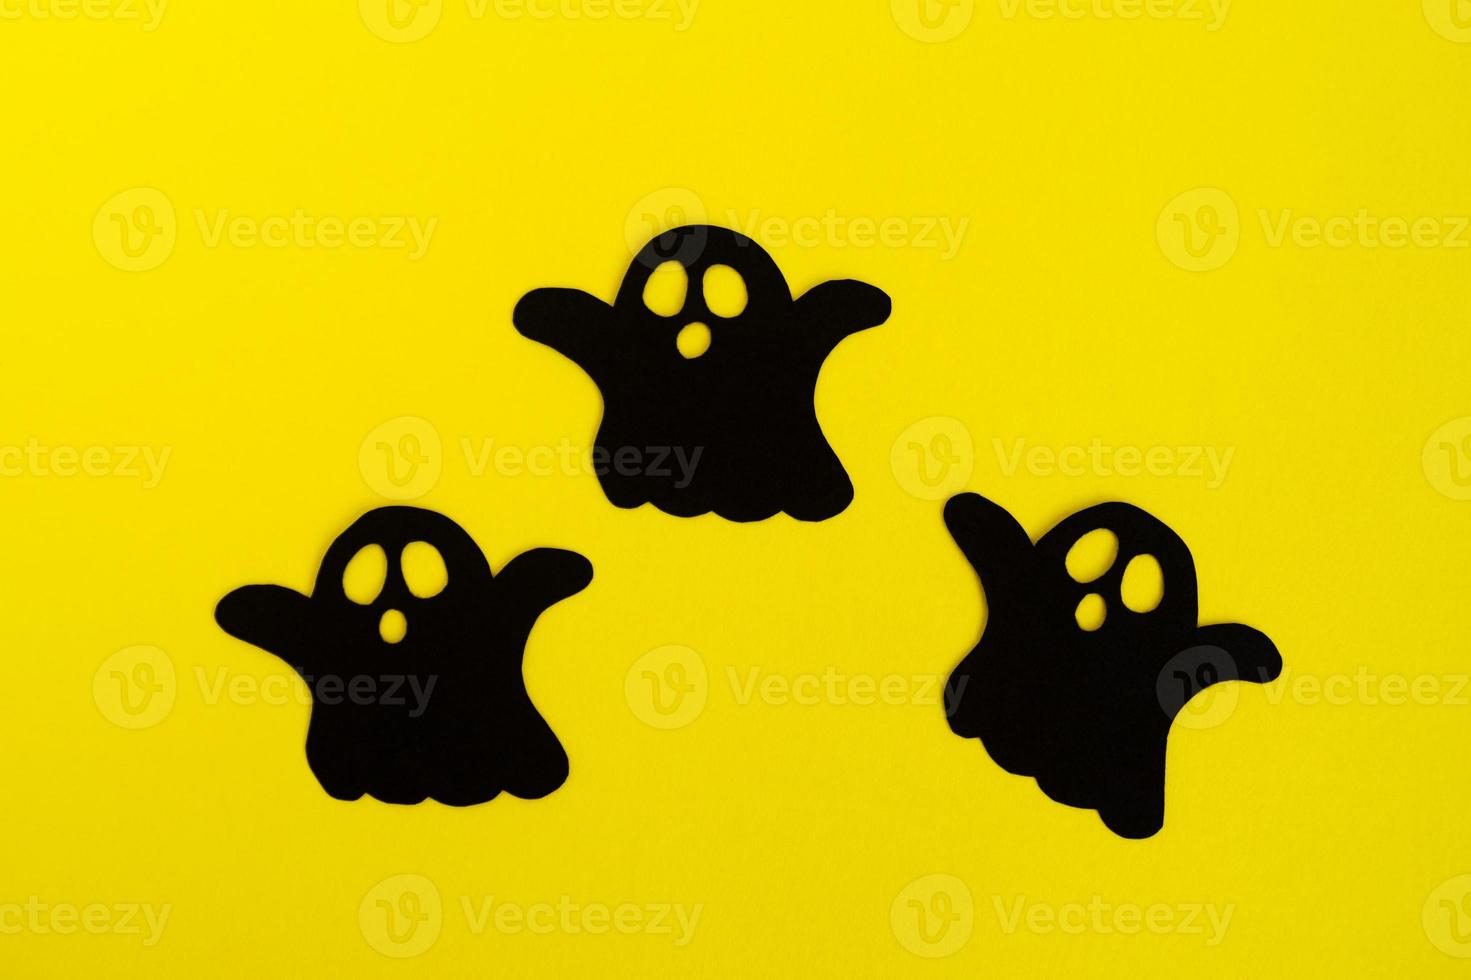 decoraciones navideñas para halloween. tres fantasmas de papel negro sobre un fondo amarillo, vista superior. foto